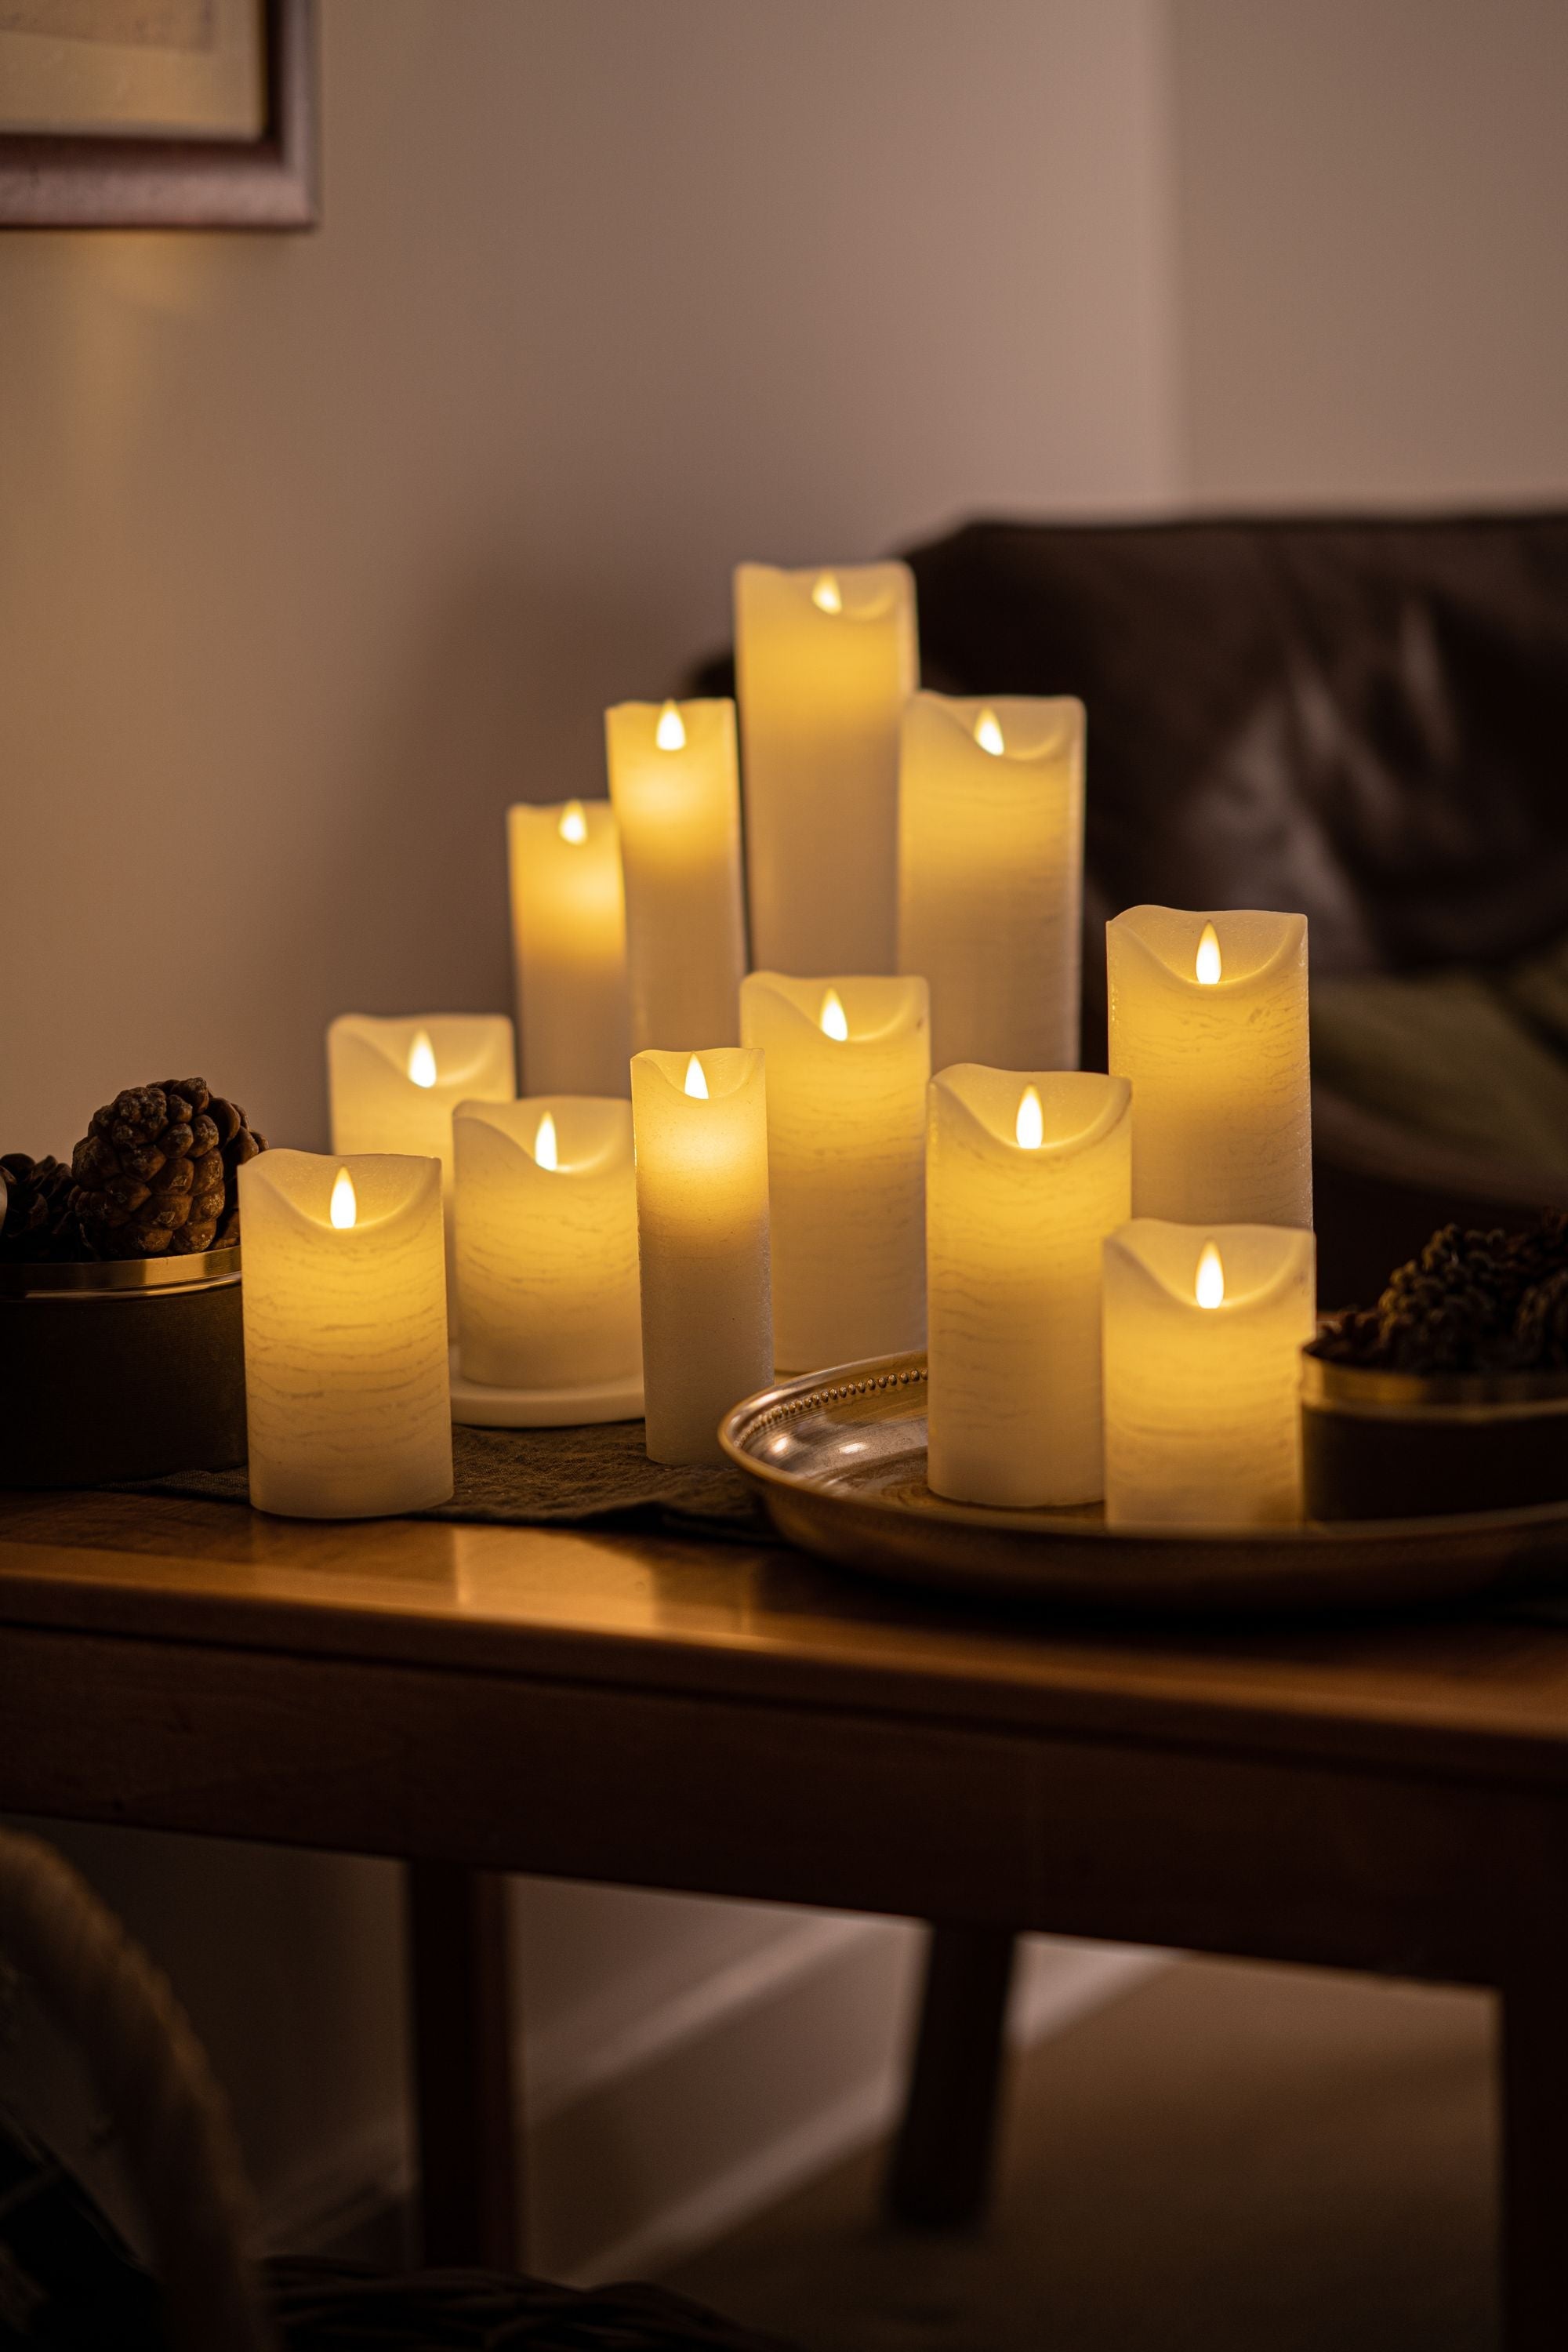 Sirius Sara wiederaufladbare LED -Kerzen weiß, Ø7,5x H12,5 cm